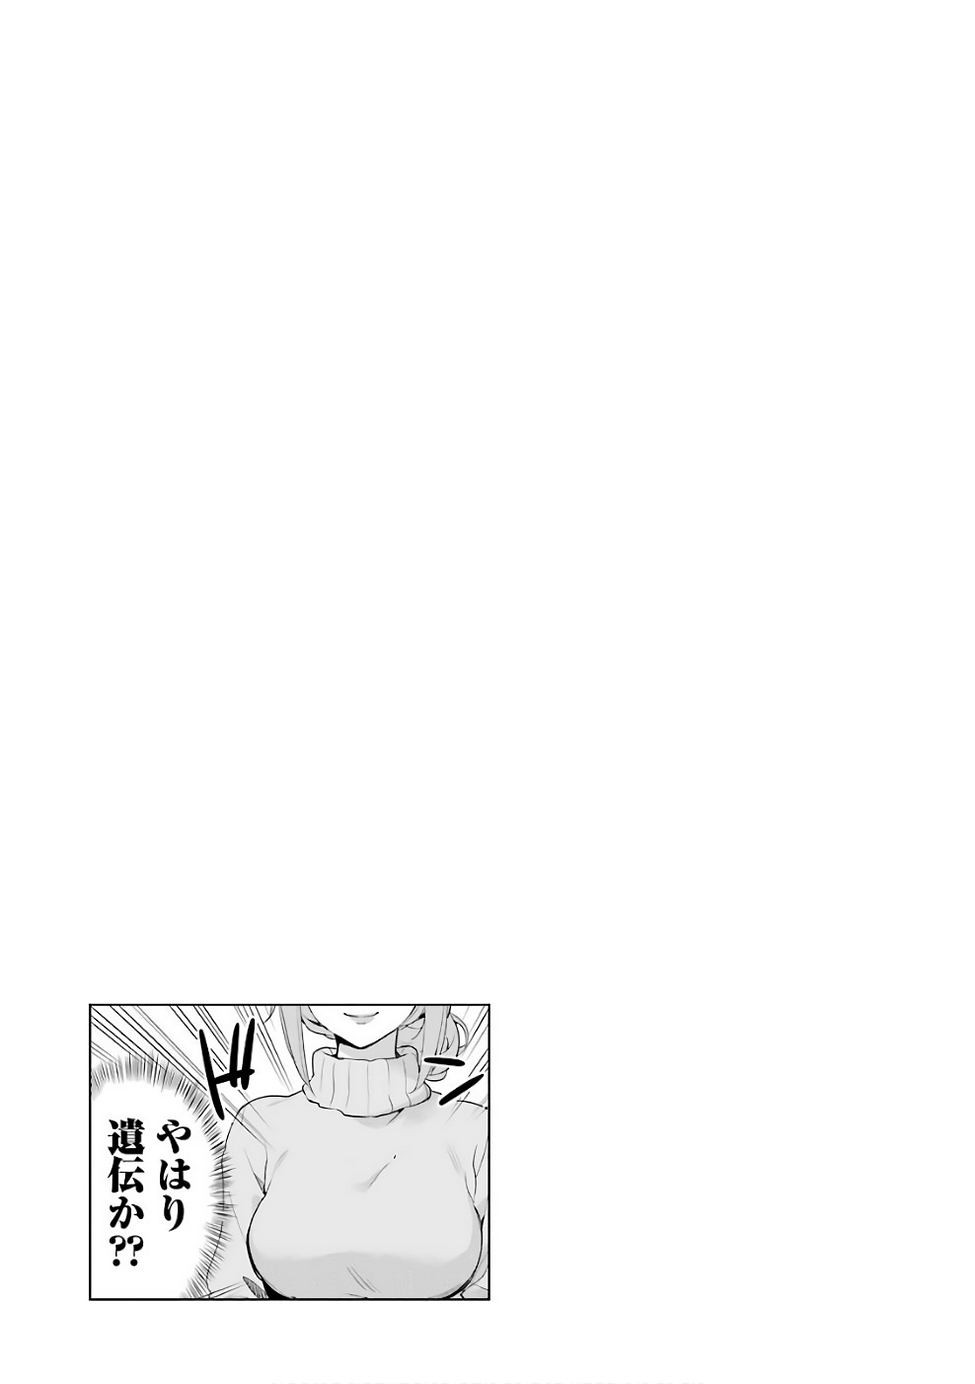 Yahari Ore no Seishun Rabukome wa Machigatte Iru. - Monologue - Chapter 56 - Page 31